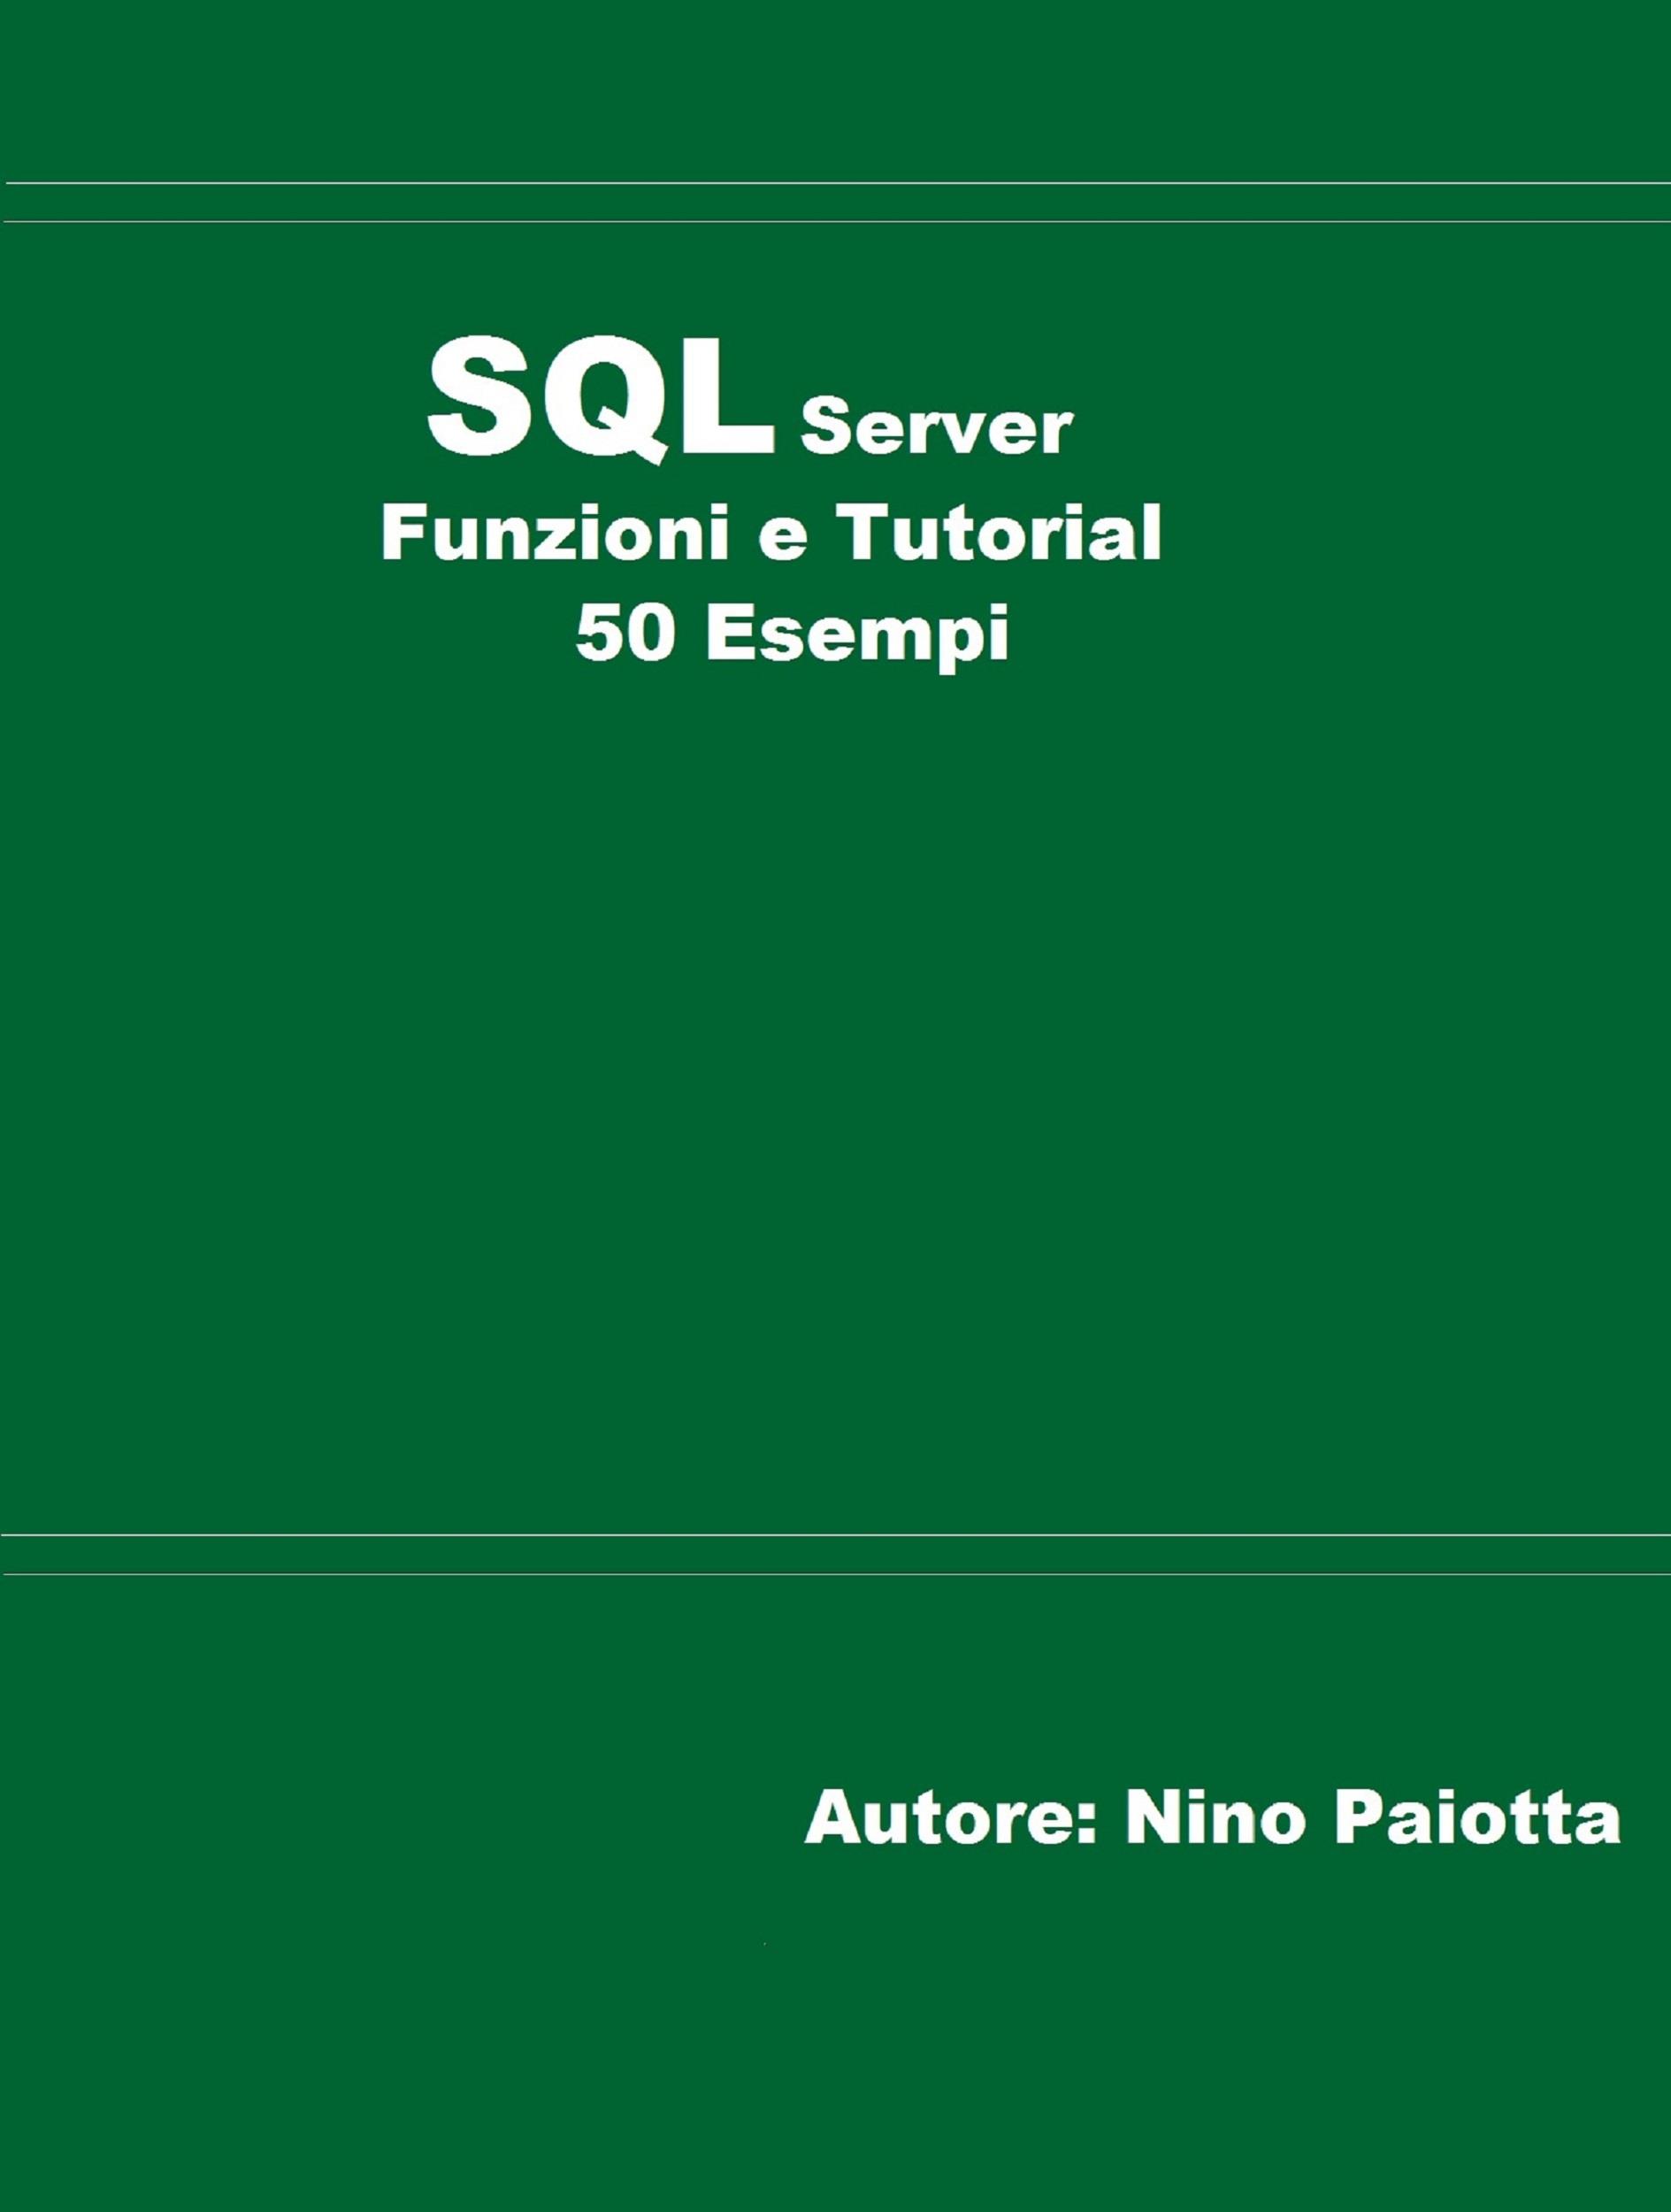 SQL Server Funzioni e tutorial 50 esempi